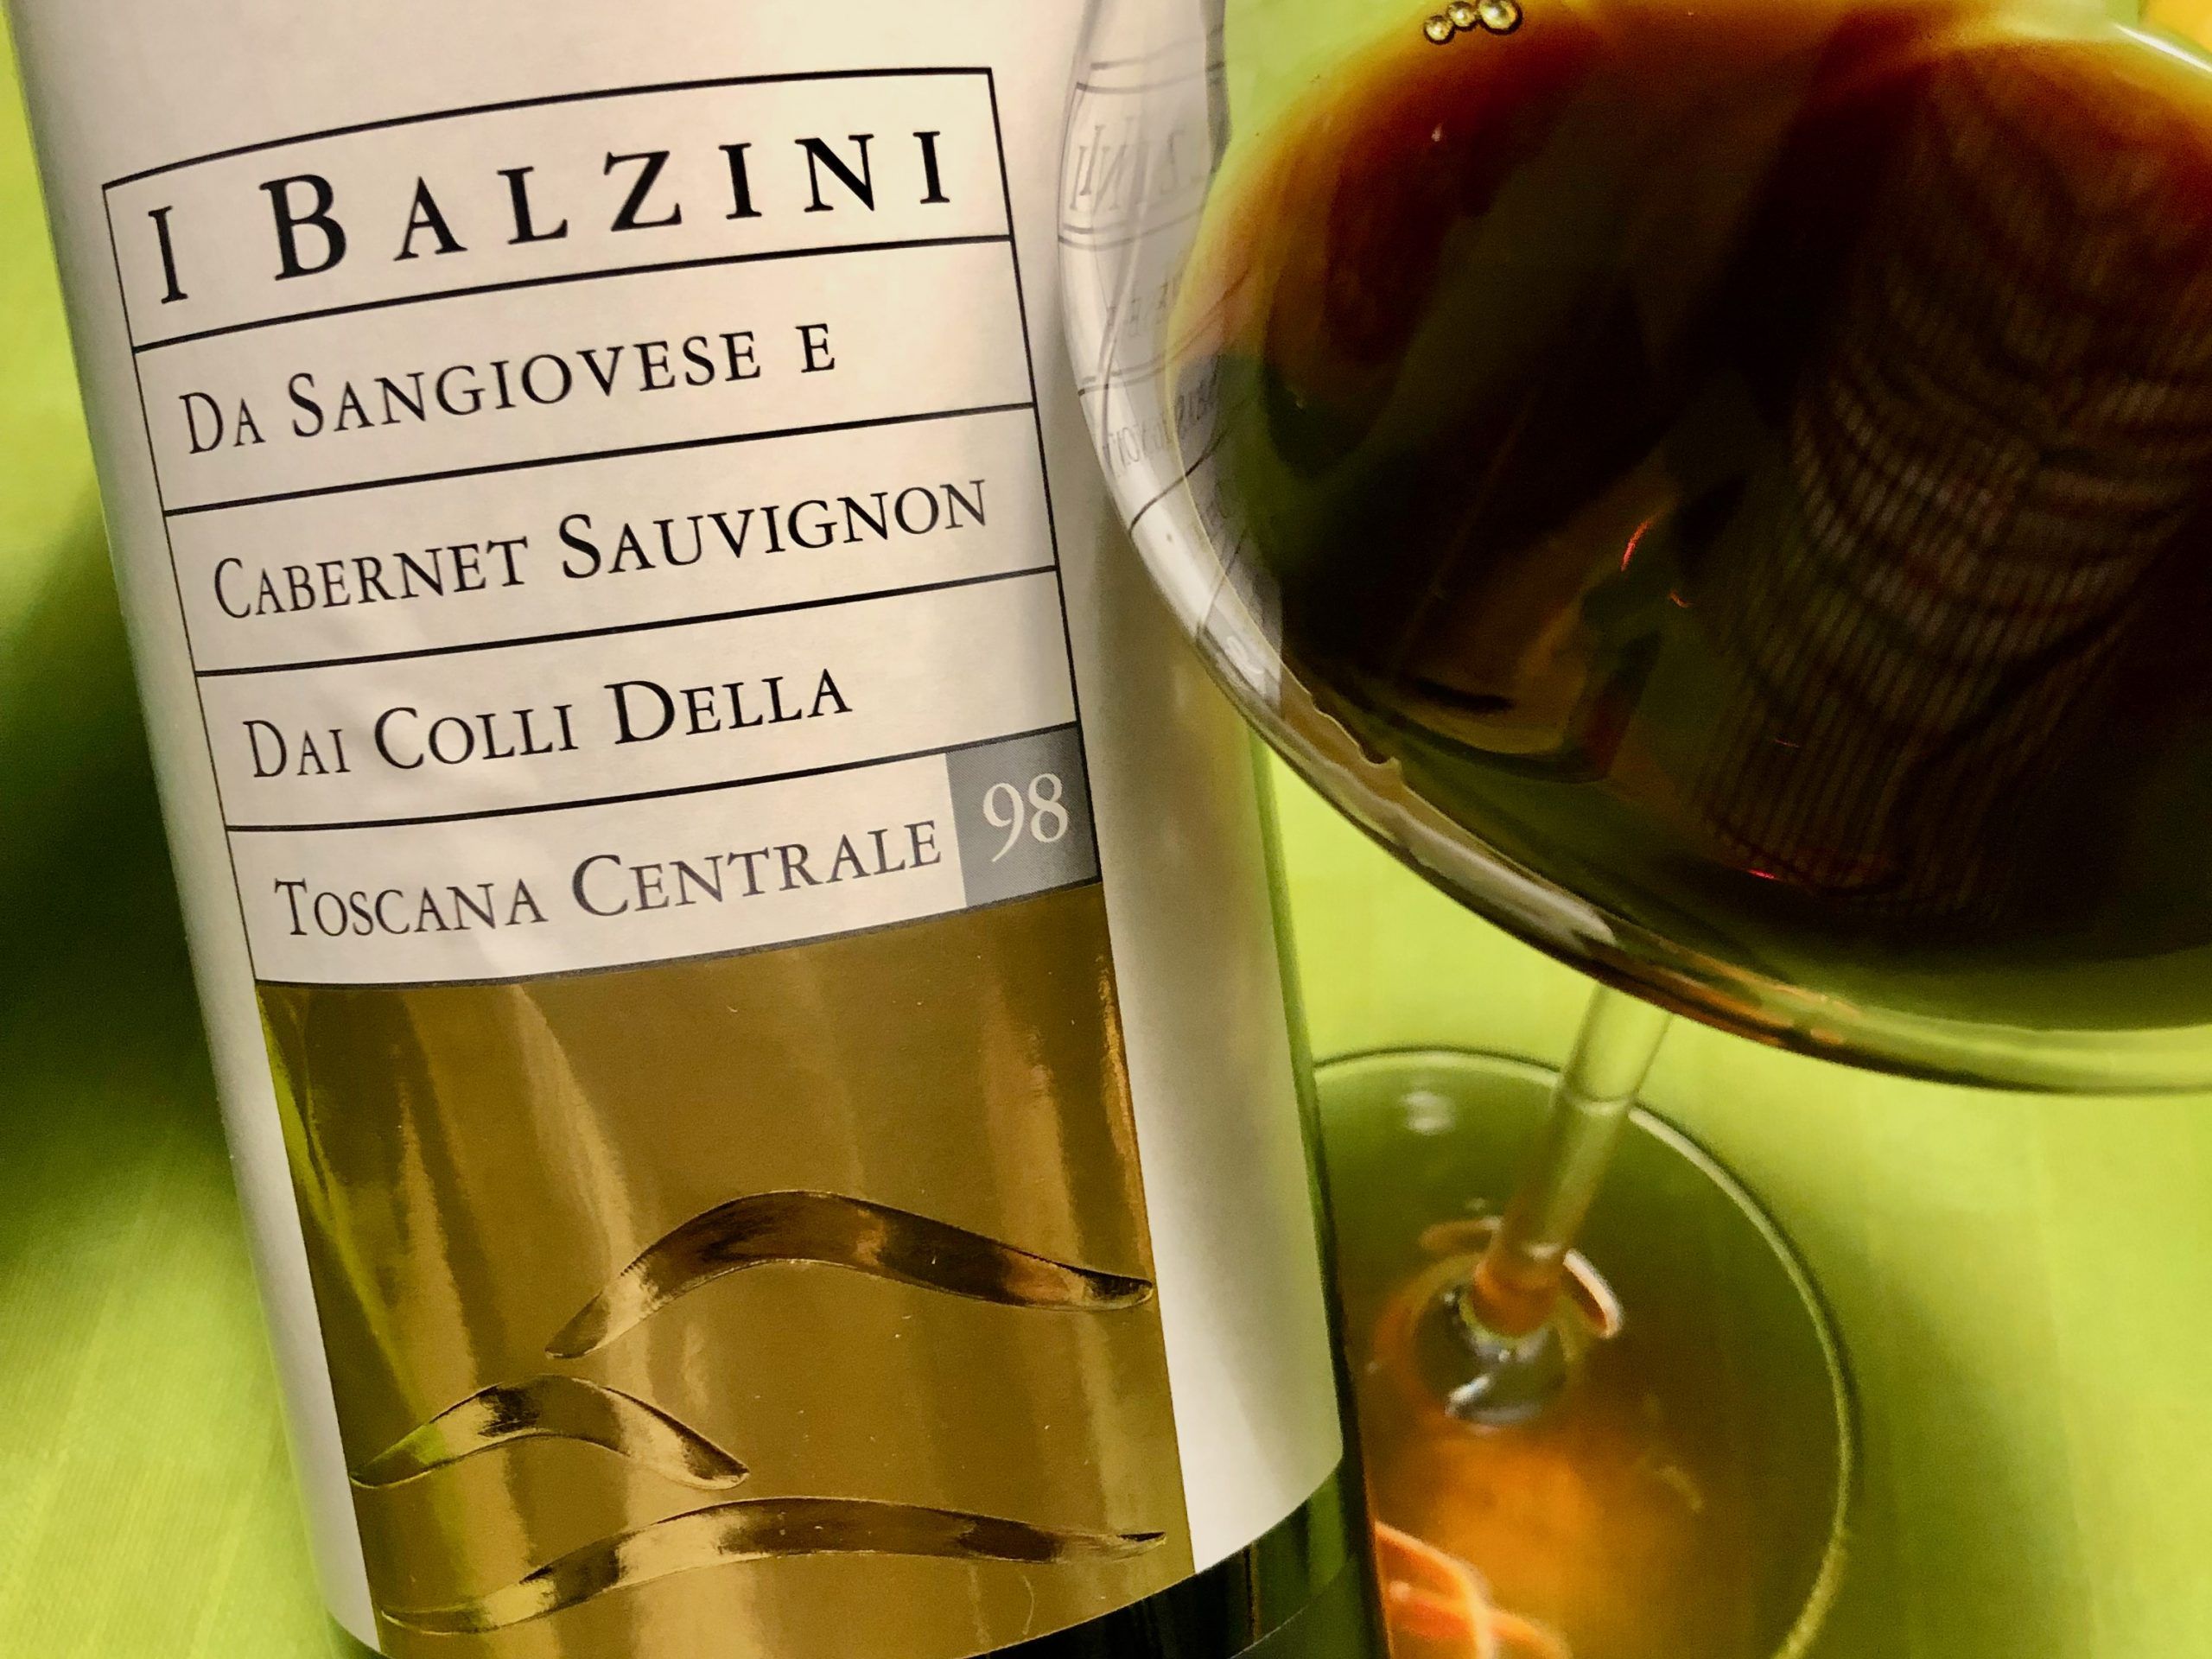 i-balzini-white-label-1998-tuscan-wines-fabio-ceccarelli-italy4golf